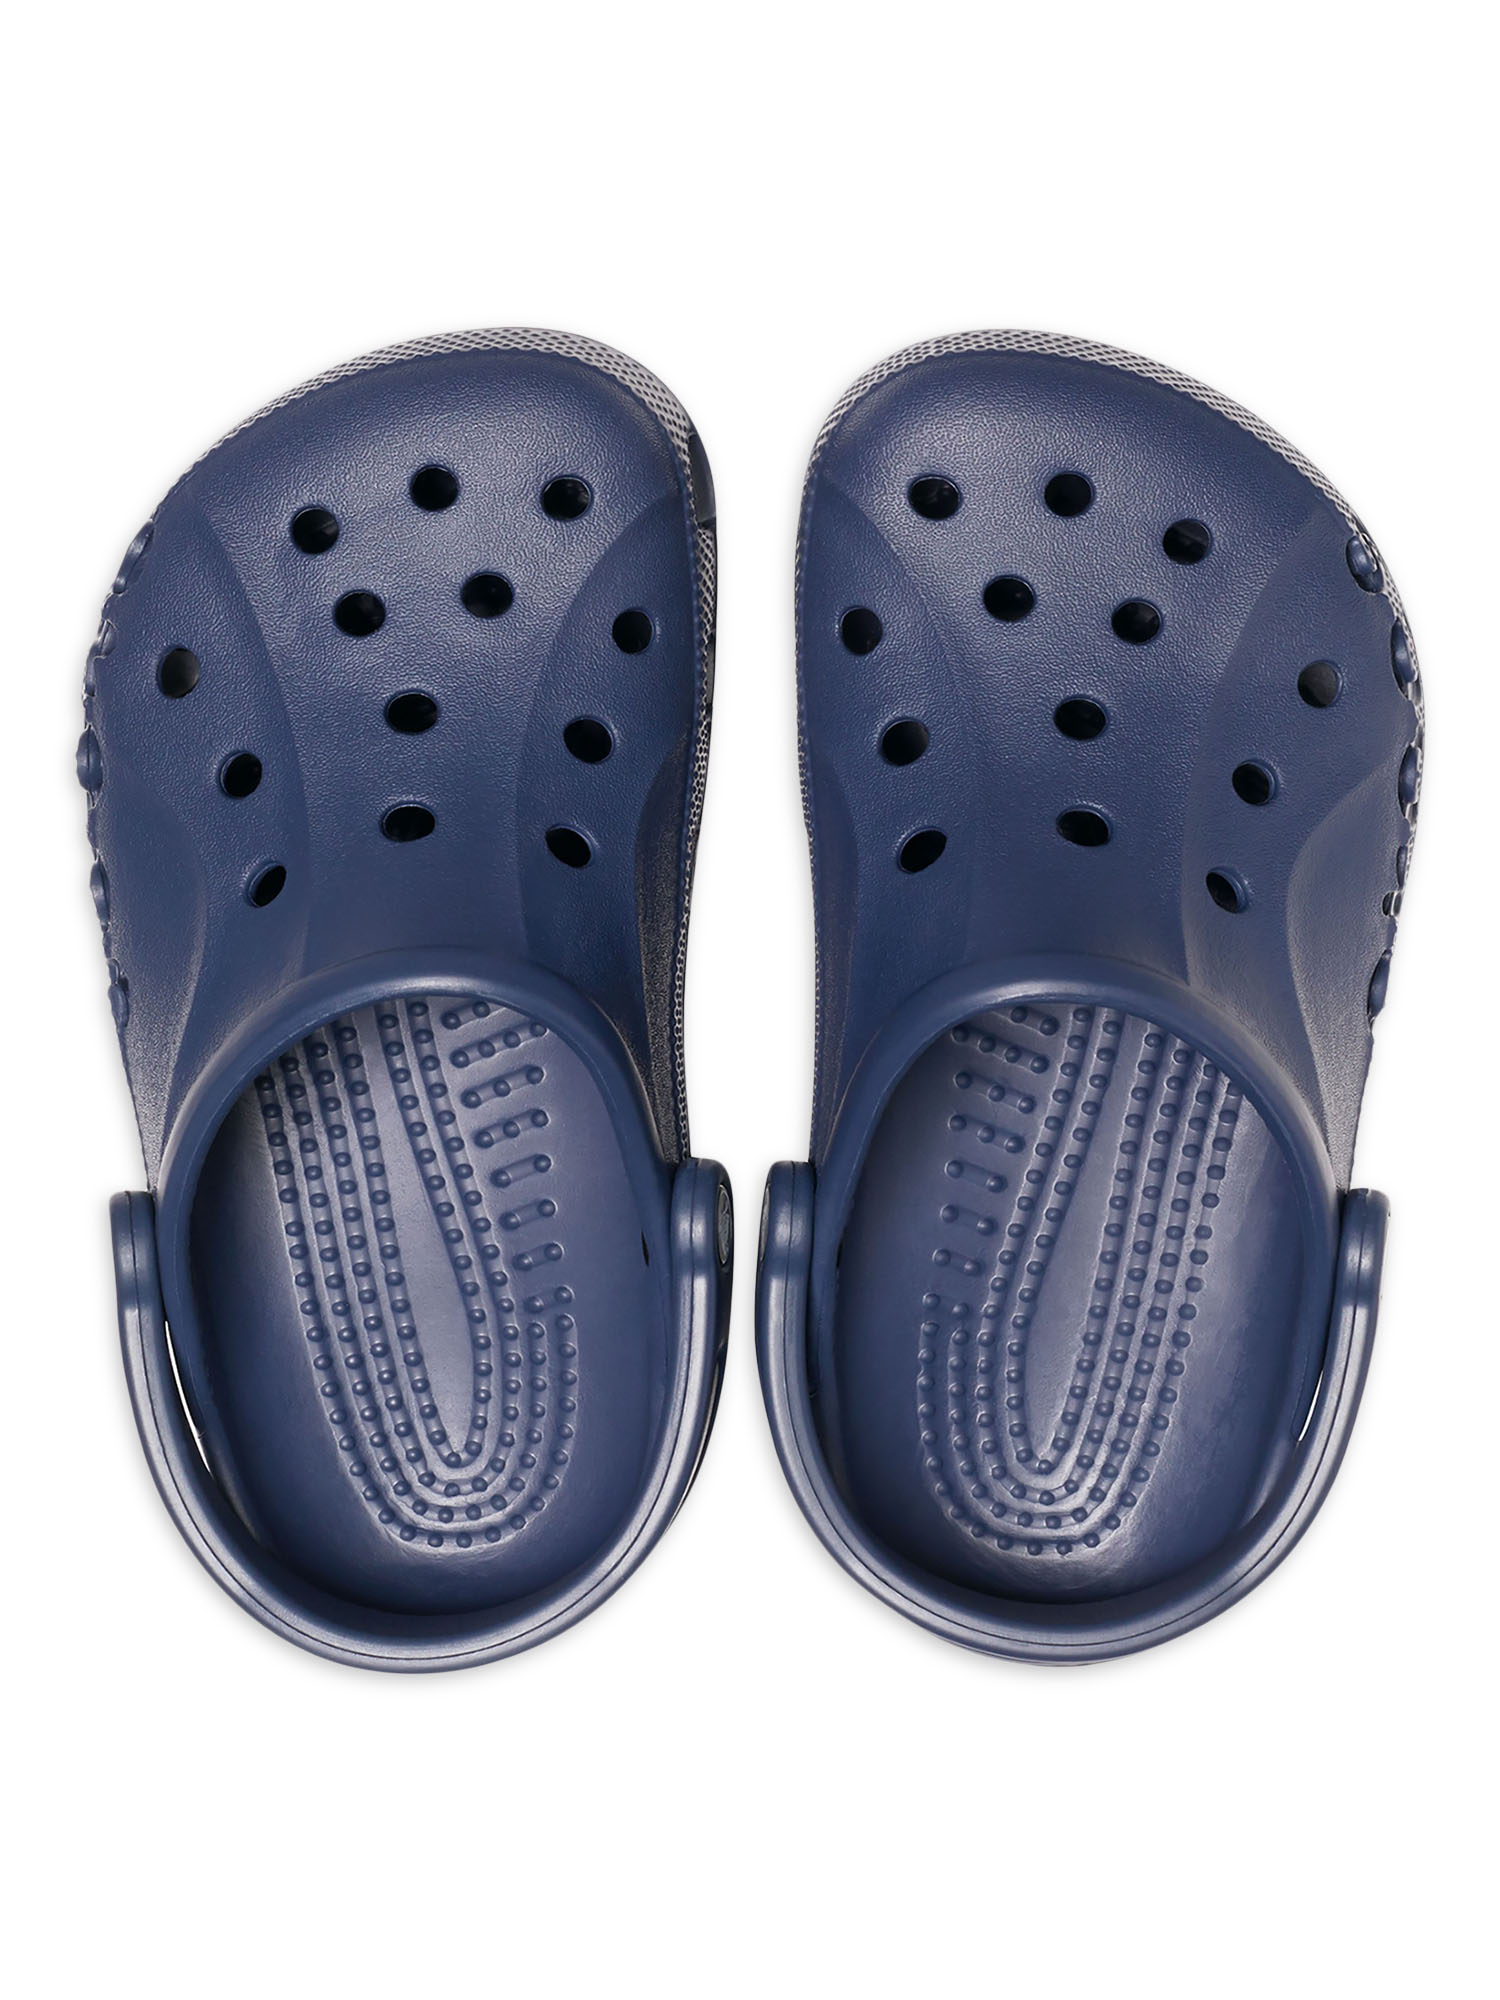 Crocs Unisex Baya Clog Sandals - Walmart.com